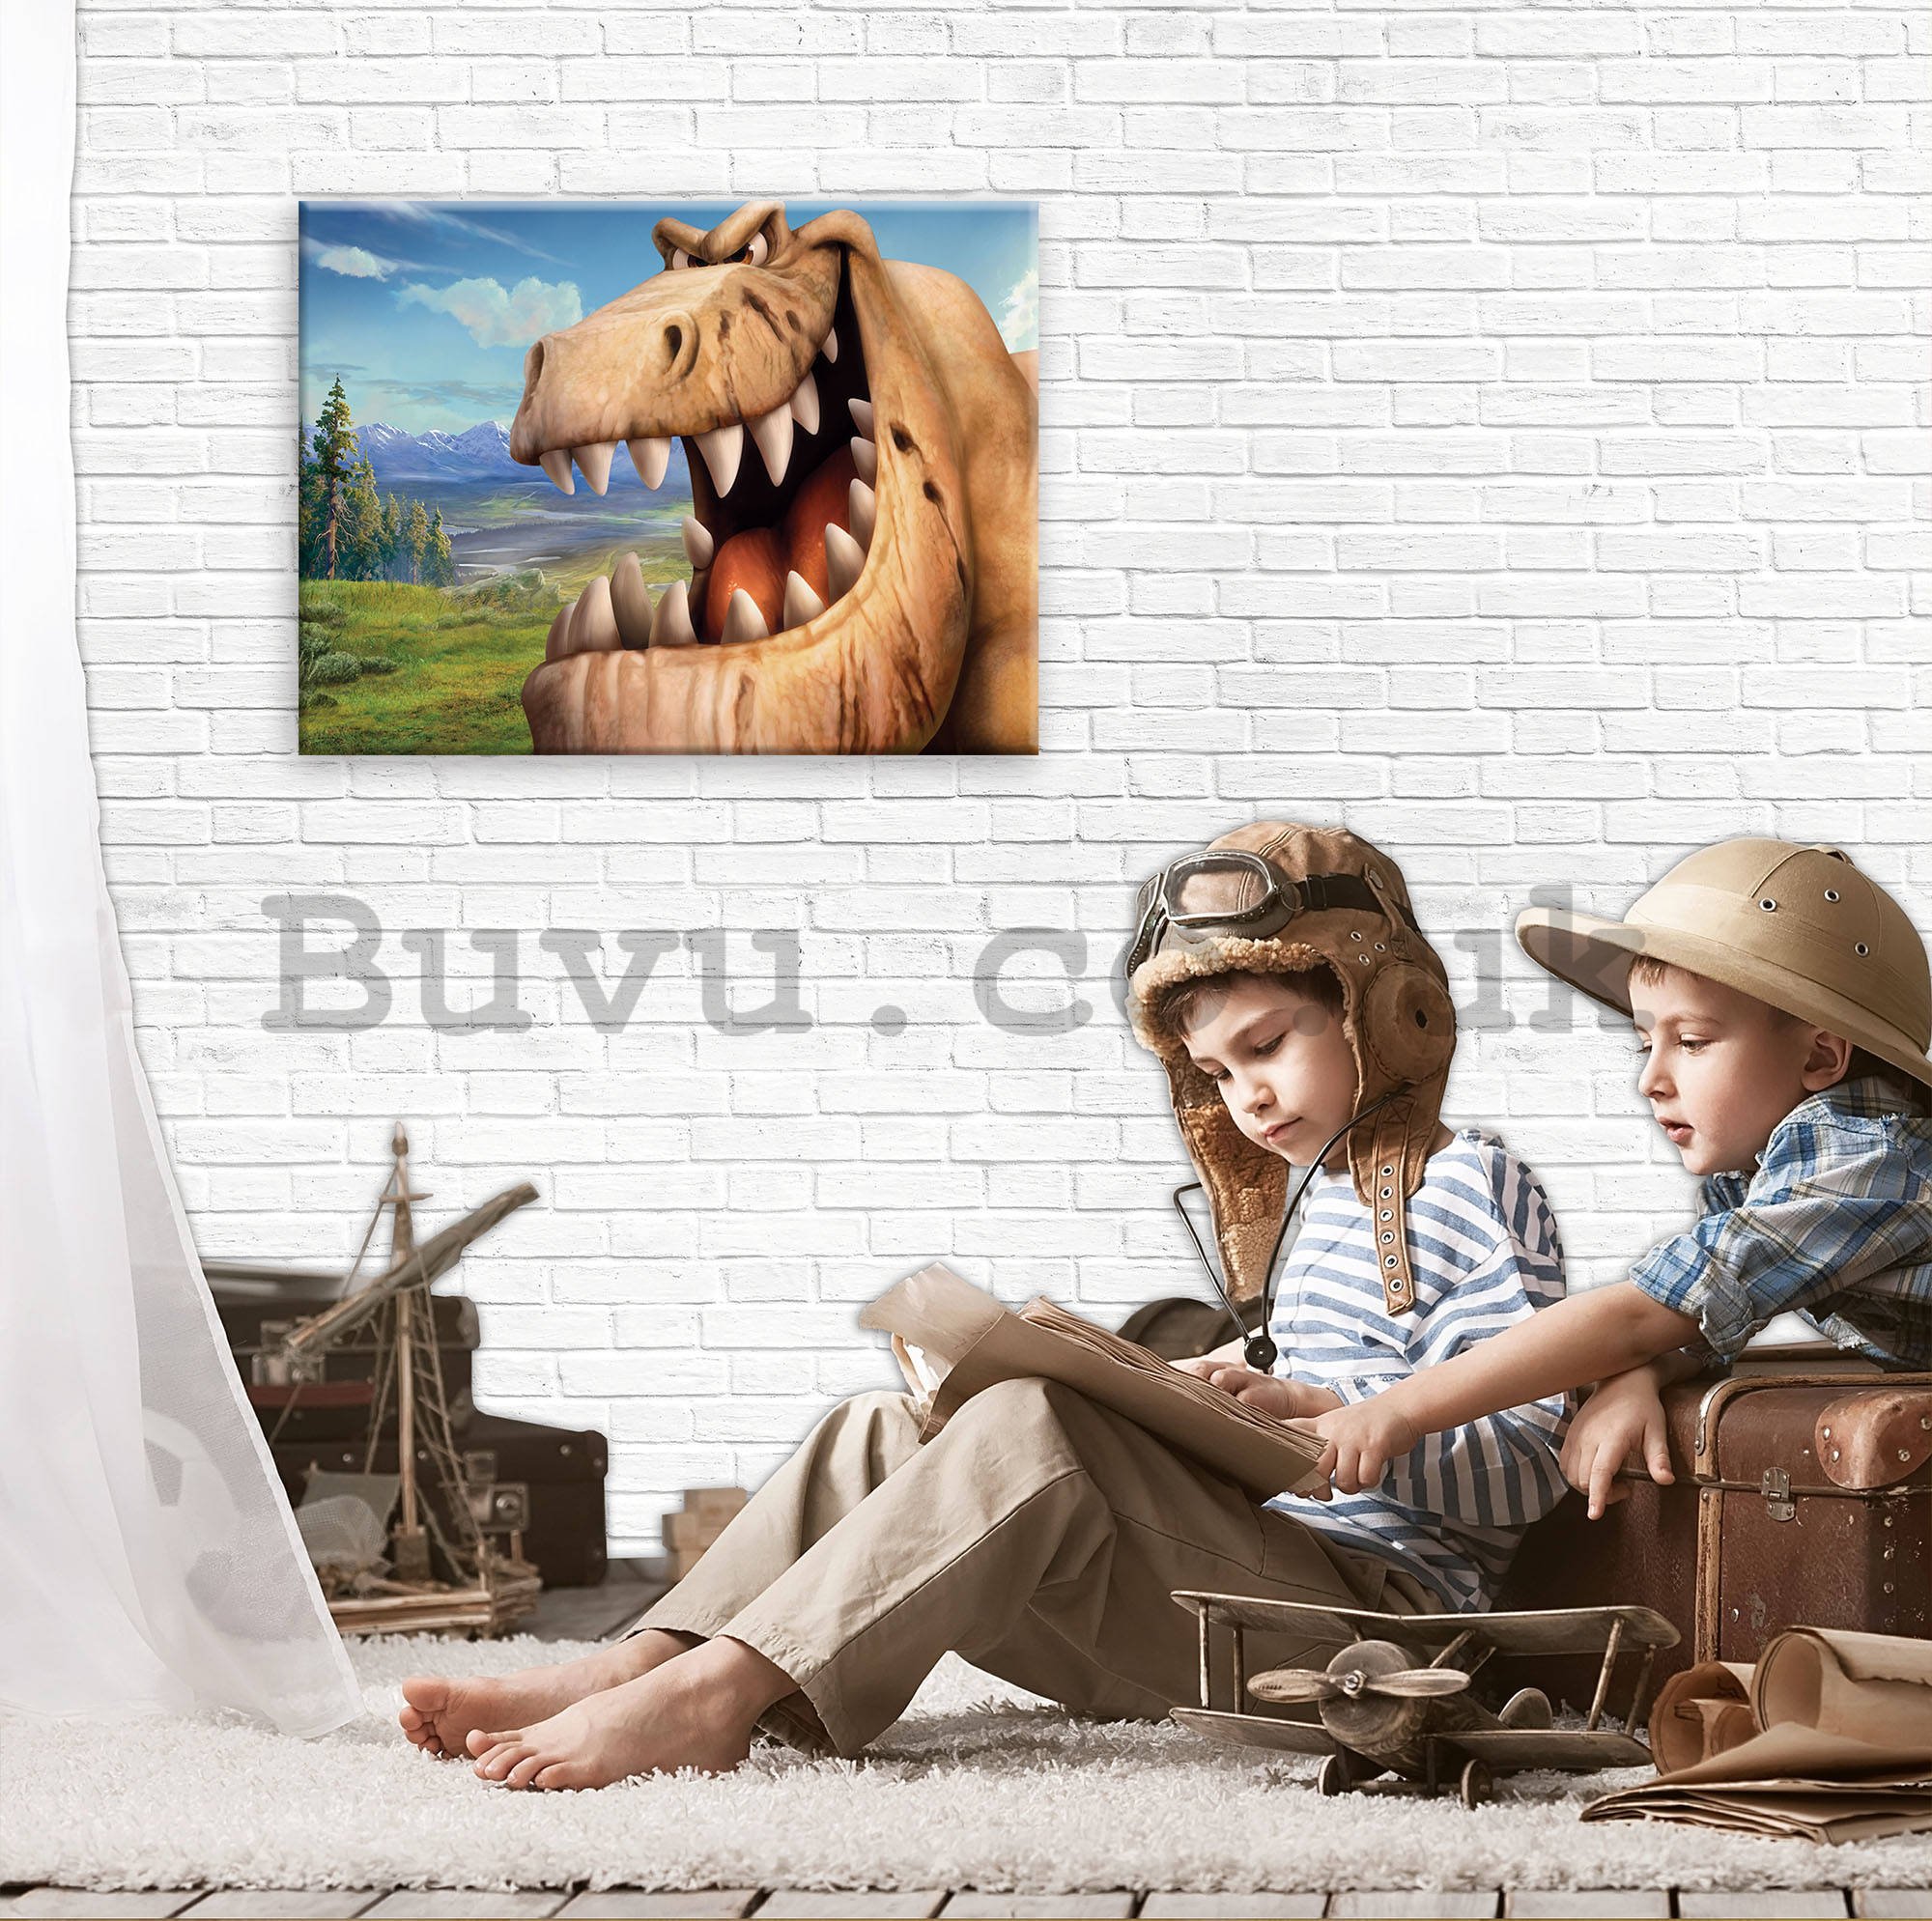 Painting on canvas: The Good Dinosaur Butch (4) - 80x60 cm